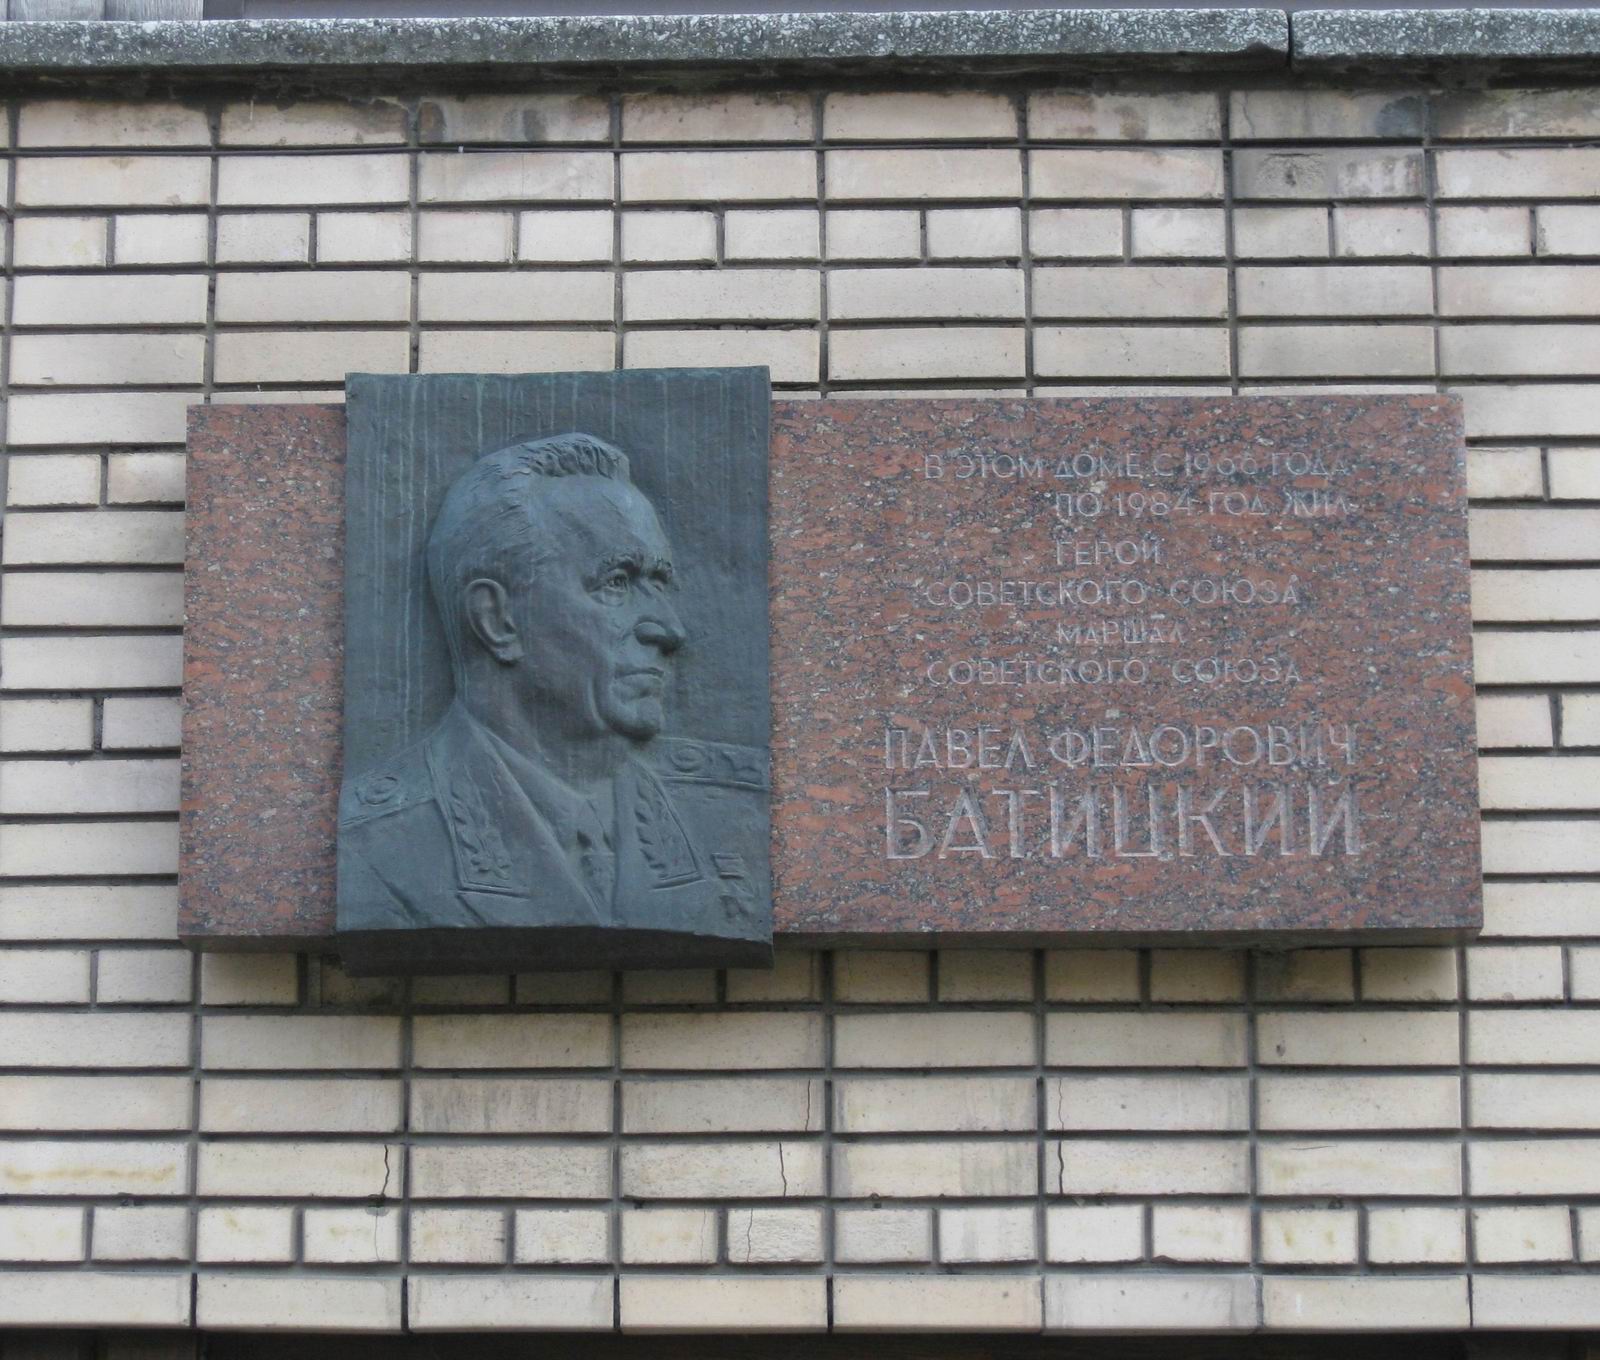 Мемориальная доска Батицкому П.Ф. (1910-1984), ск. А.А.Бичуков, арх. Е.И.Кутырев, на Сивцевом вражке, дом 31, открыта 18.11.1986.